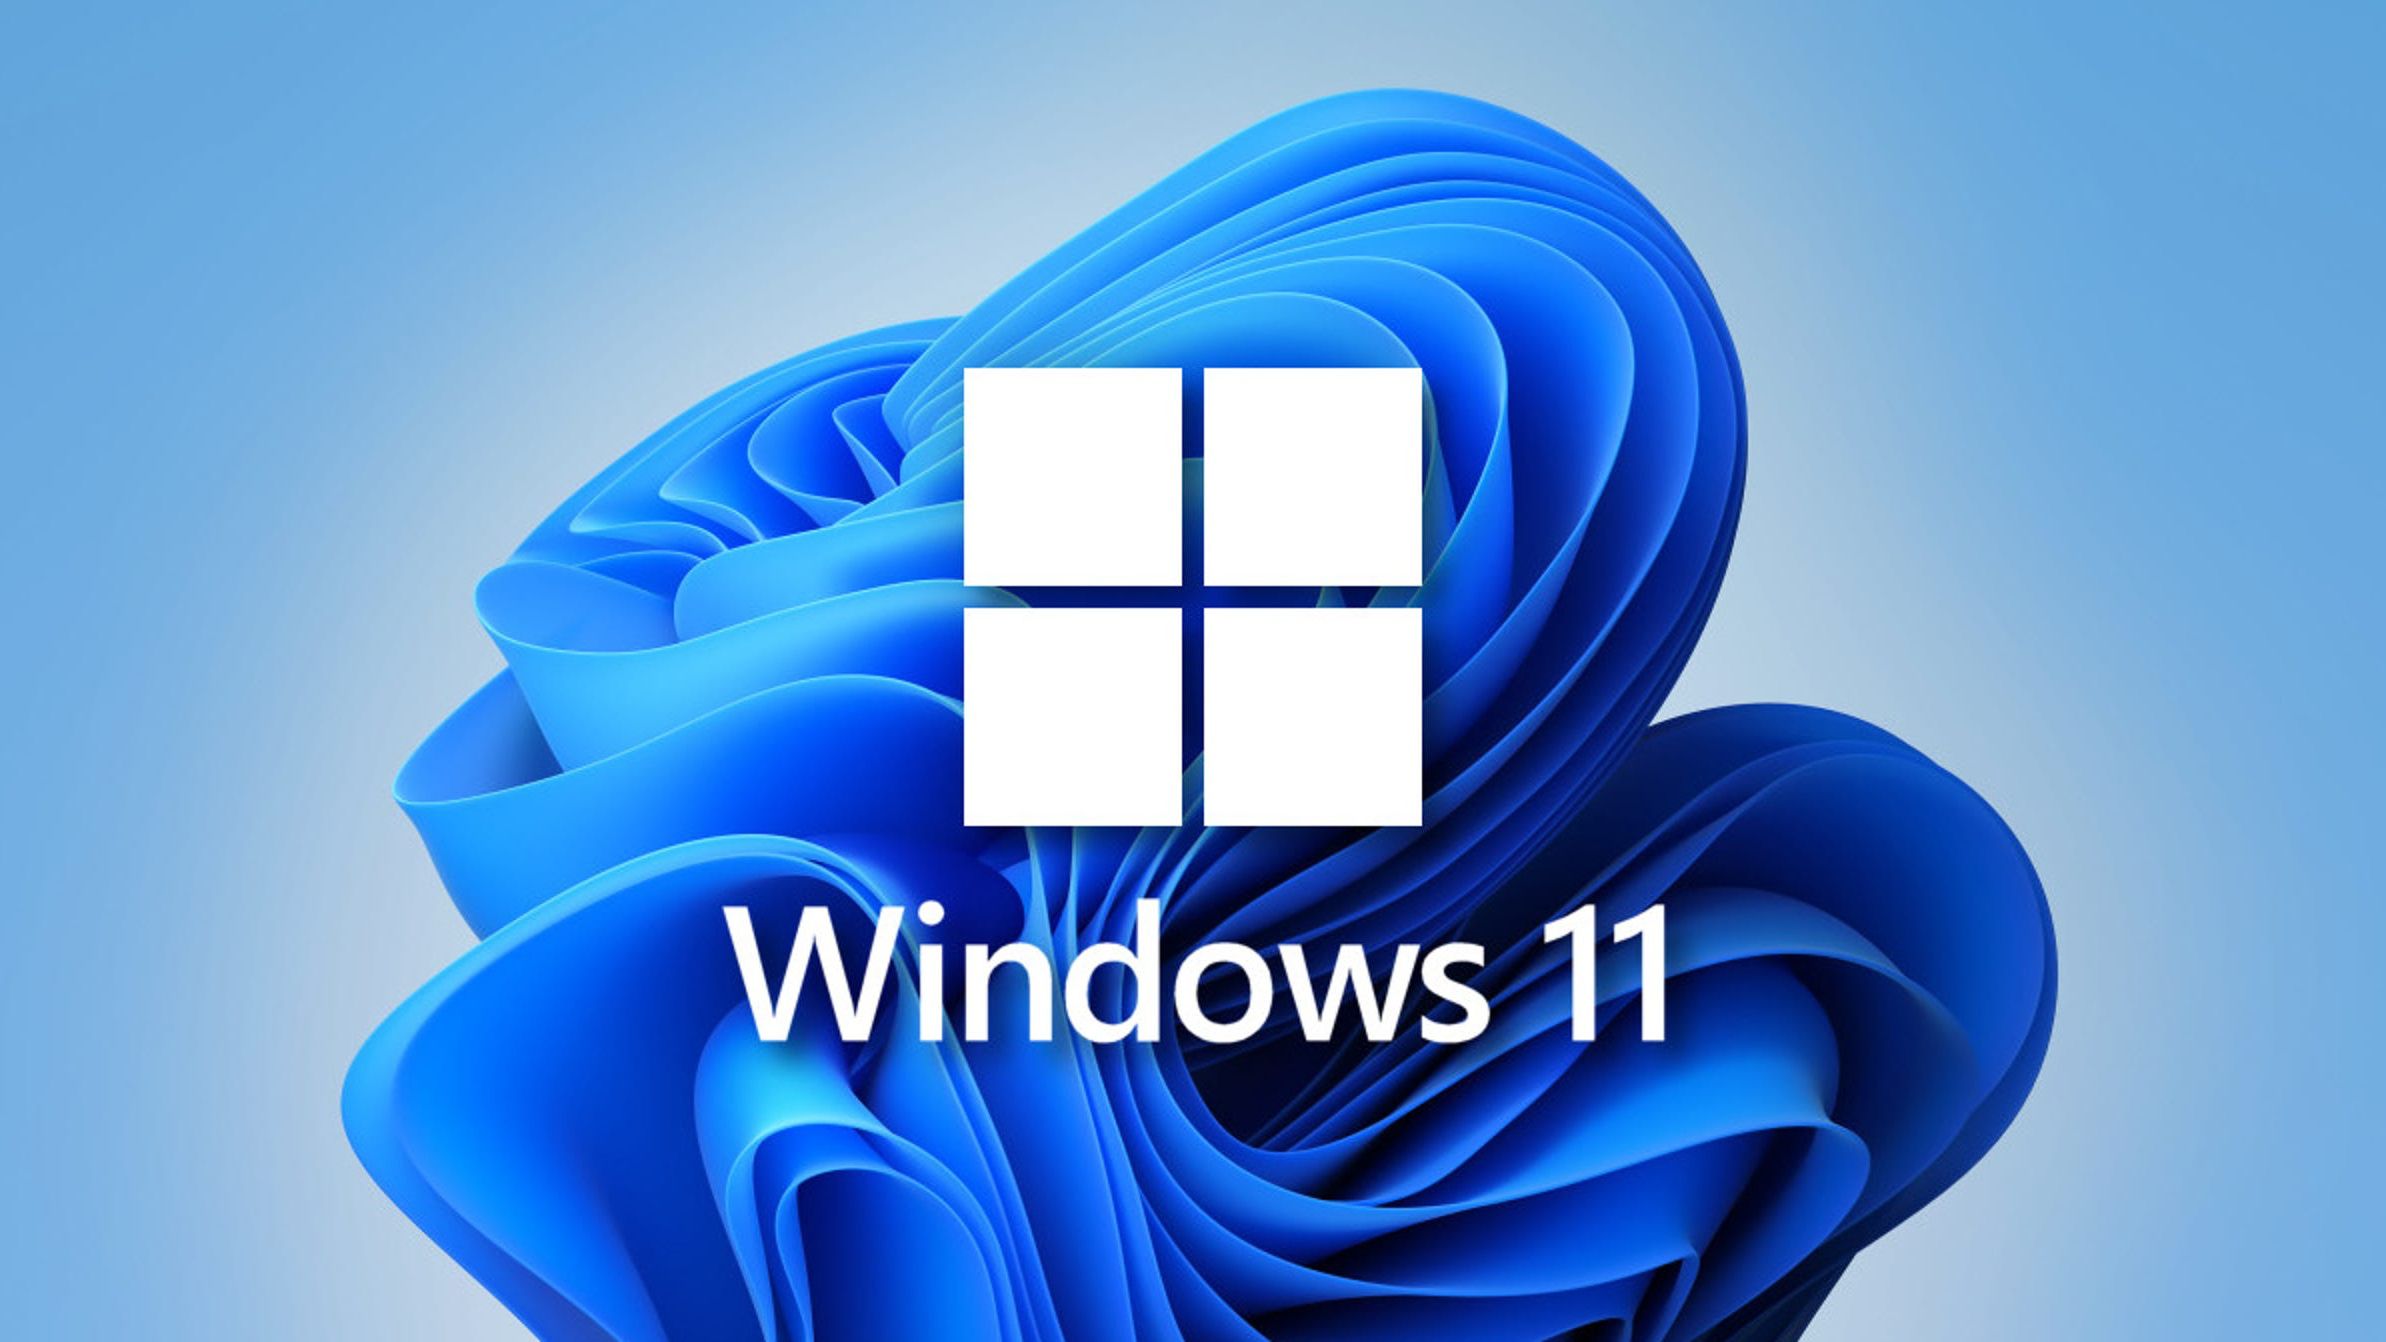 Como instalar e usar o Windows 10 e Windows 11 de graça